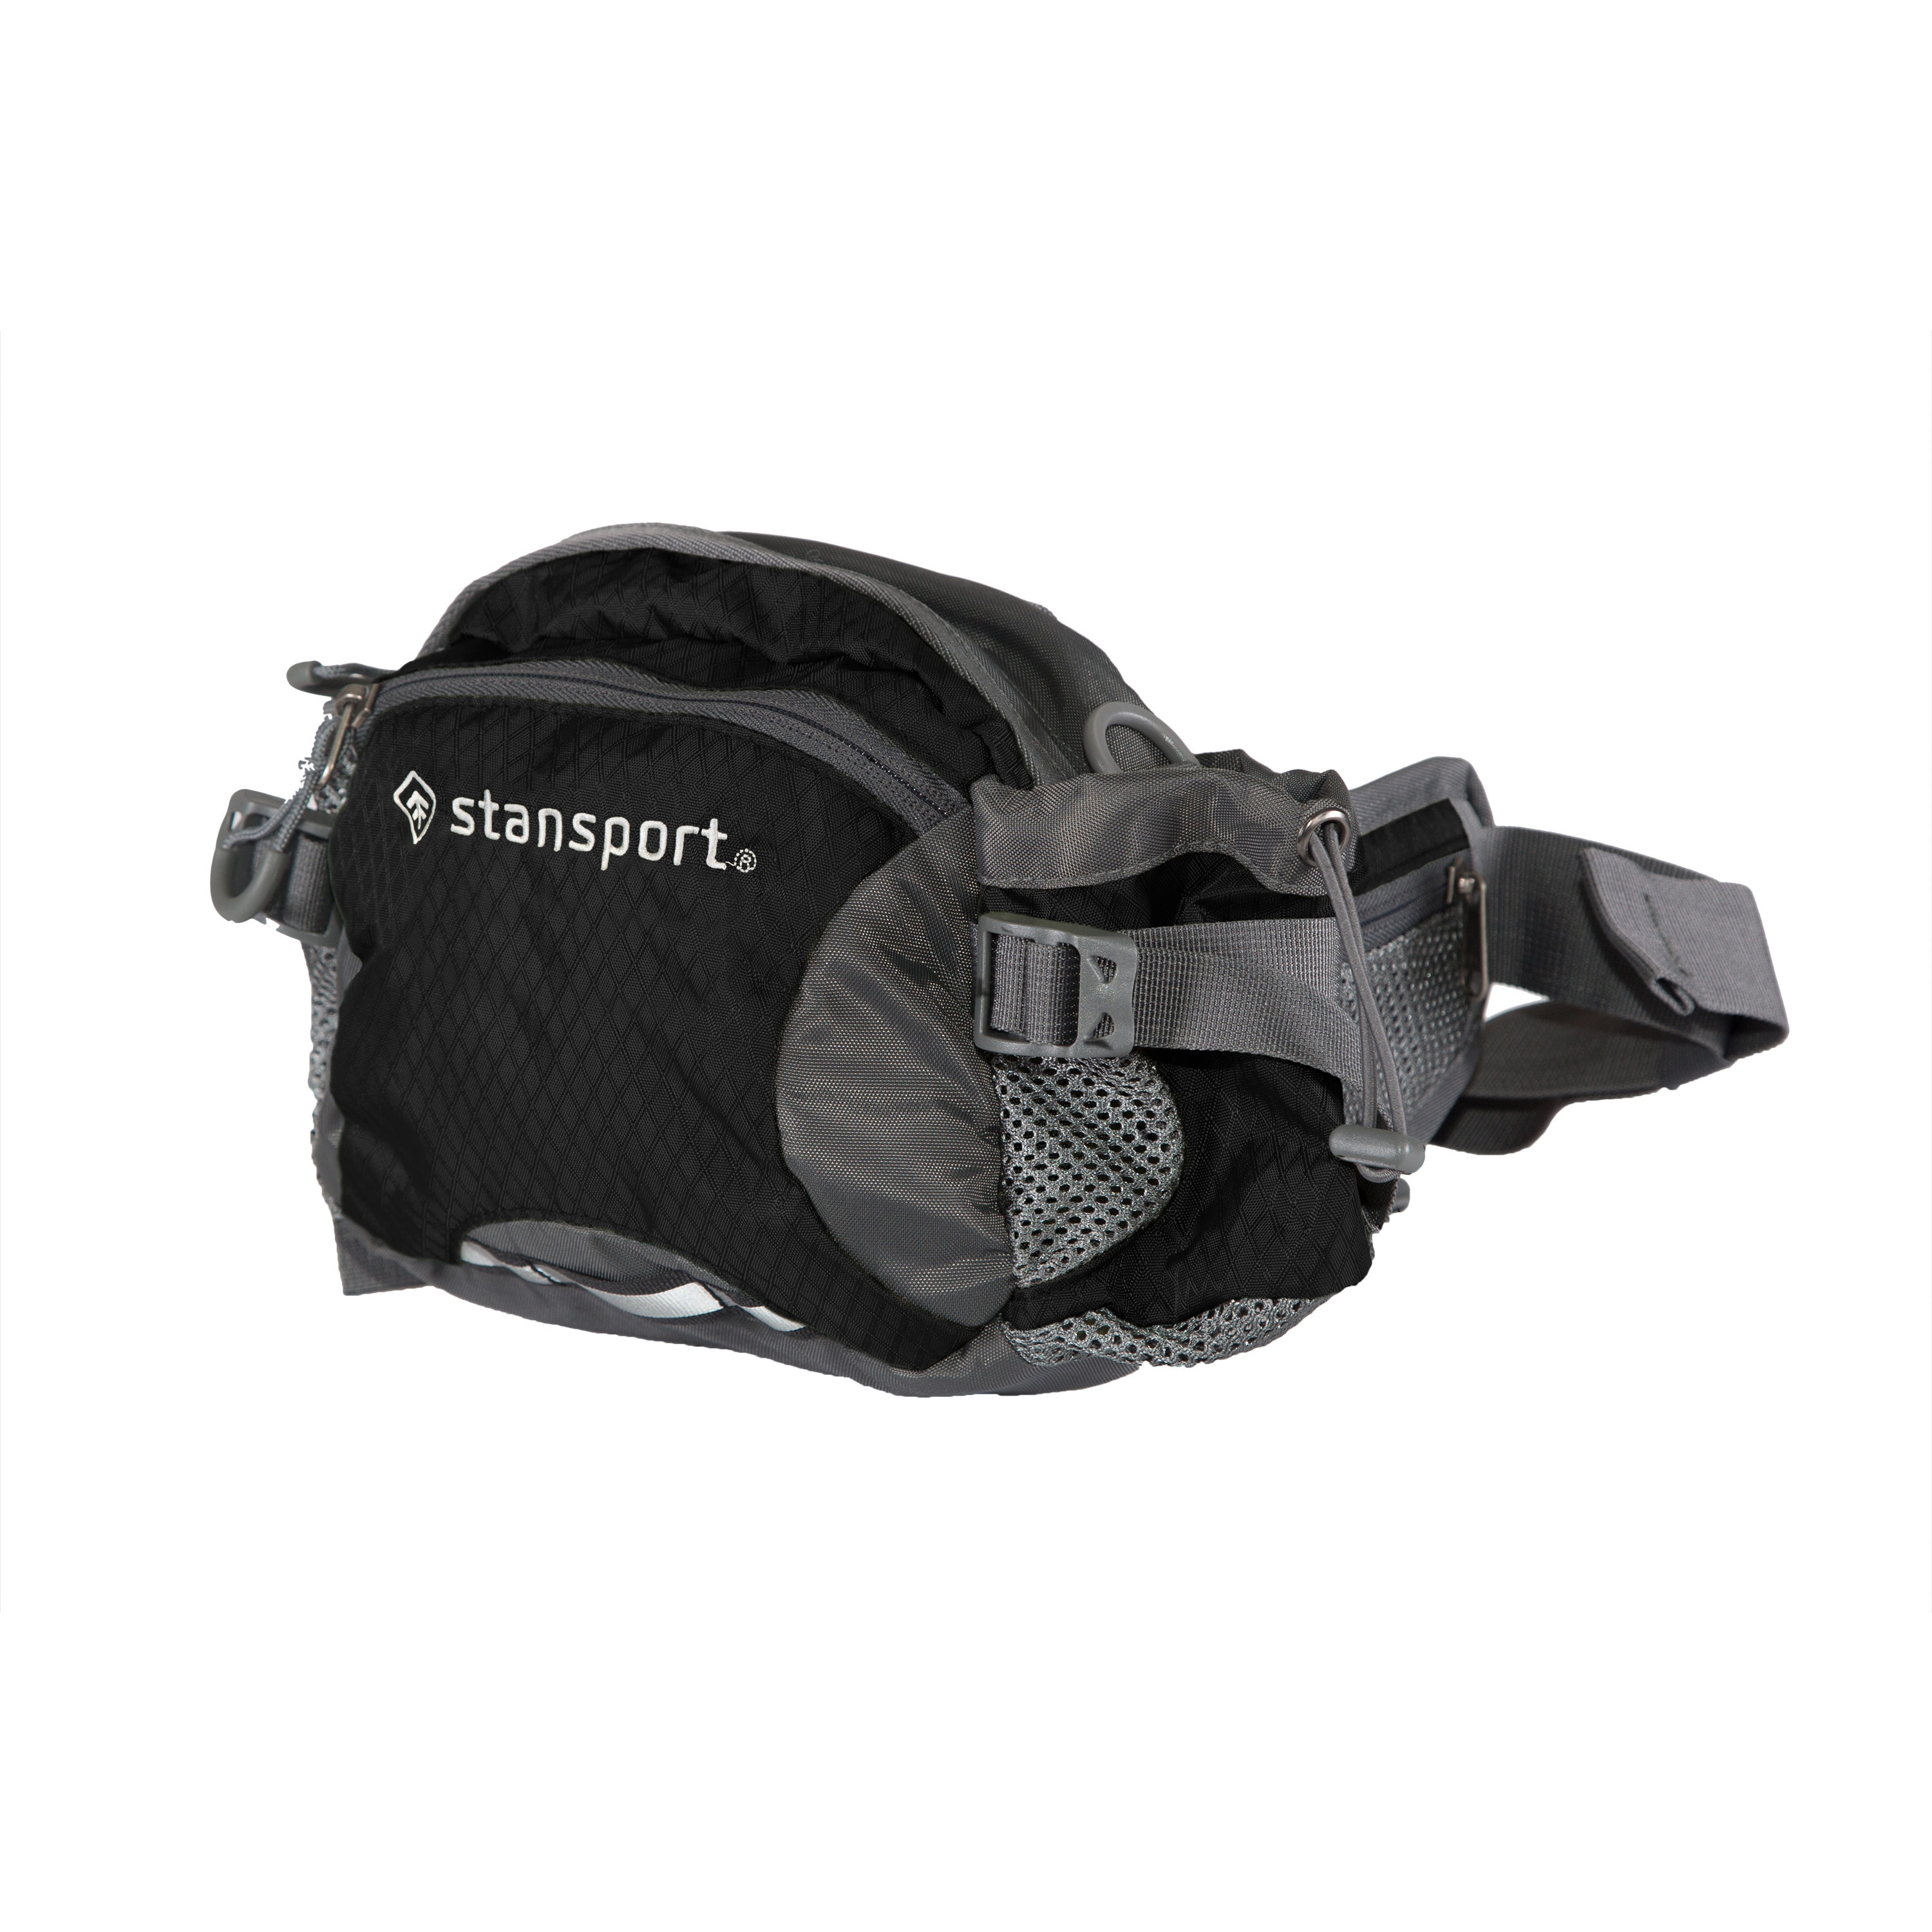 Stansport 5 Liter Waist Pack with Shoulder Strap - Black 4.5 x 6.5 